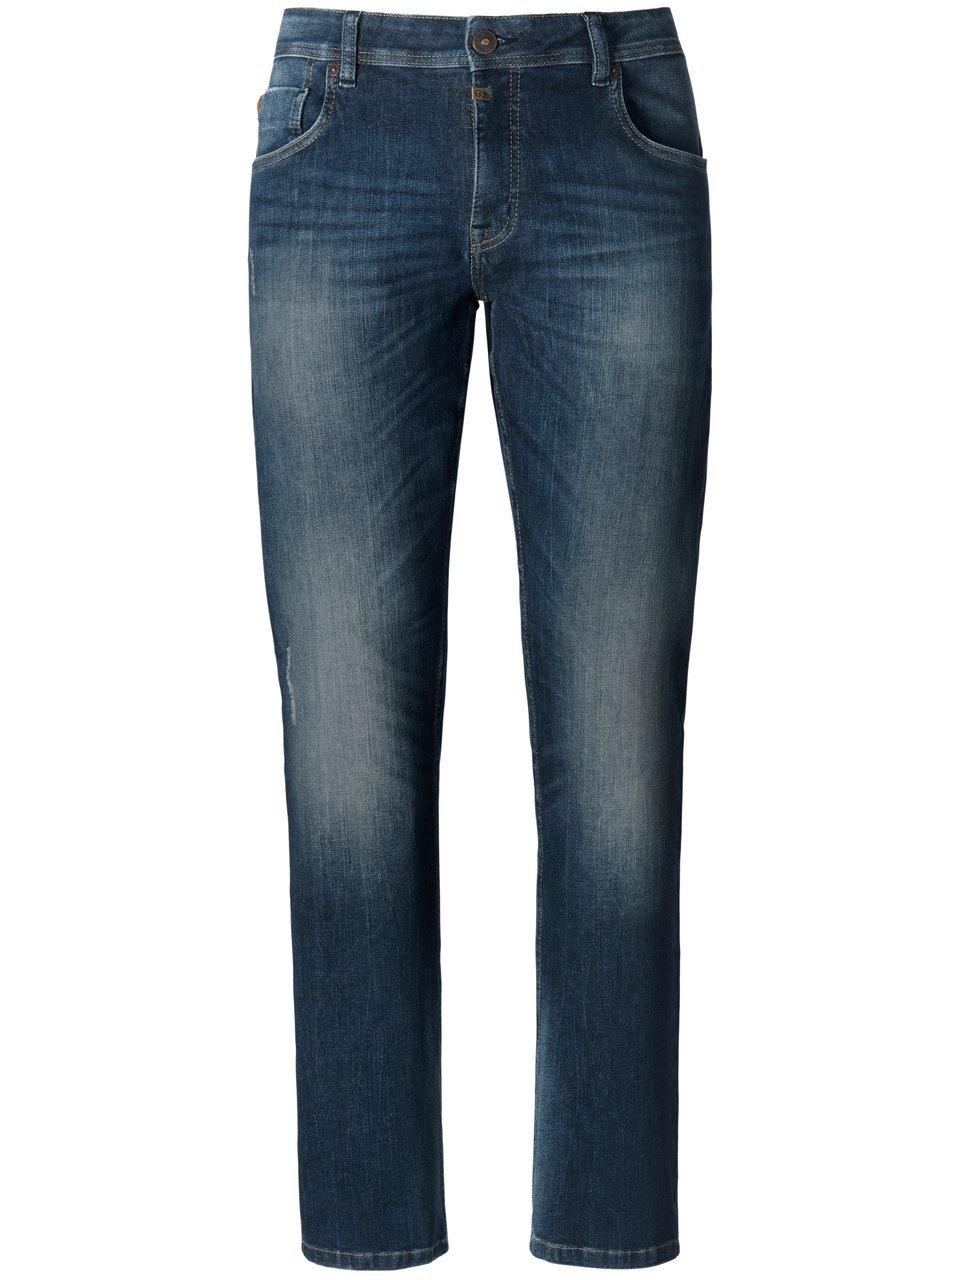 Jeans in inch-lengte 30 Van Timezone blauw